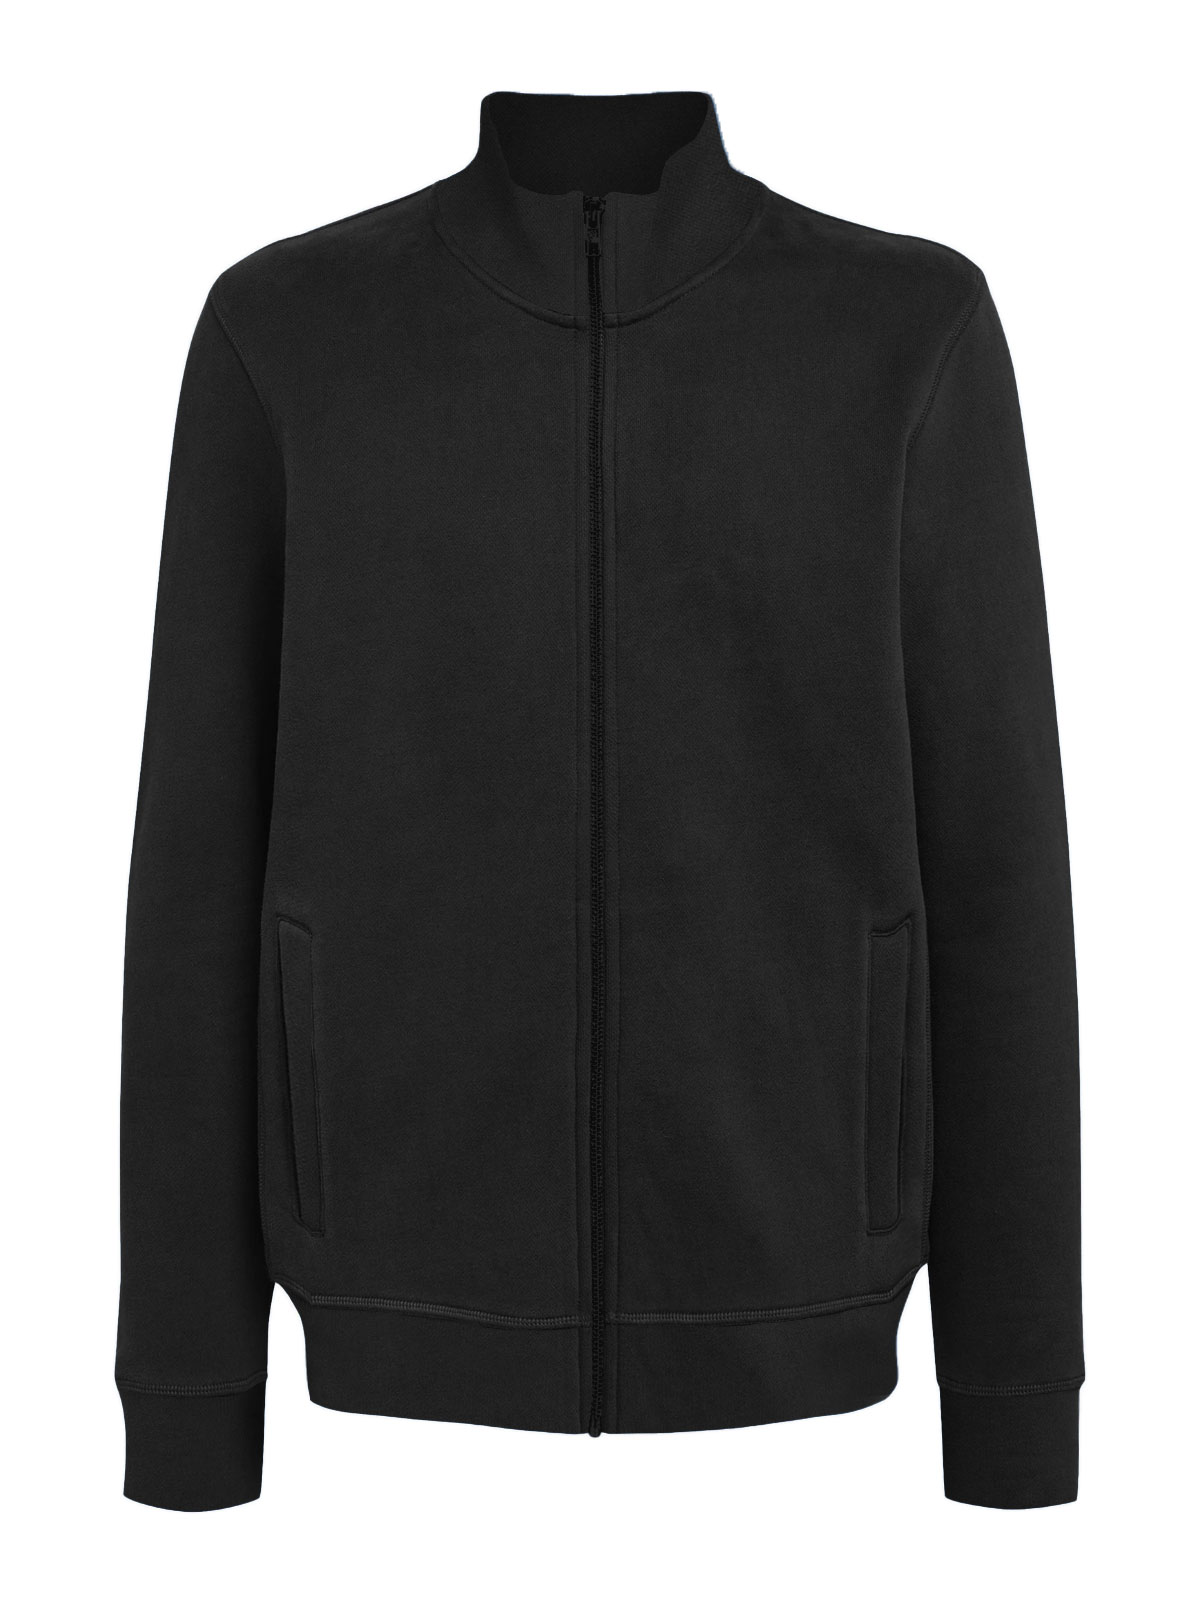 jacket-full-zip-black.webp